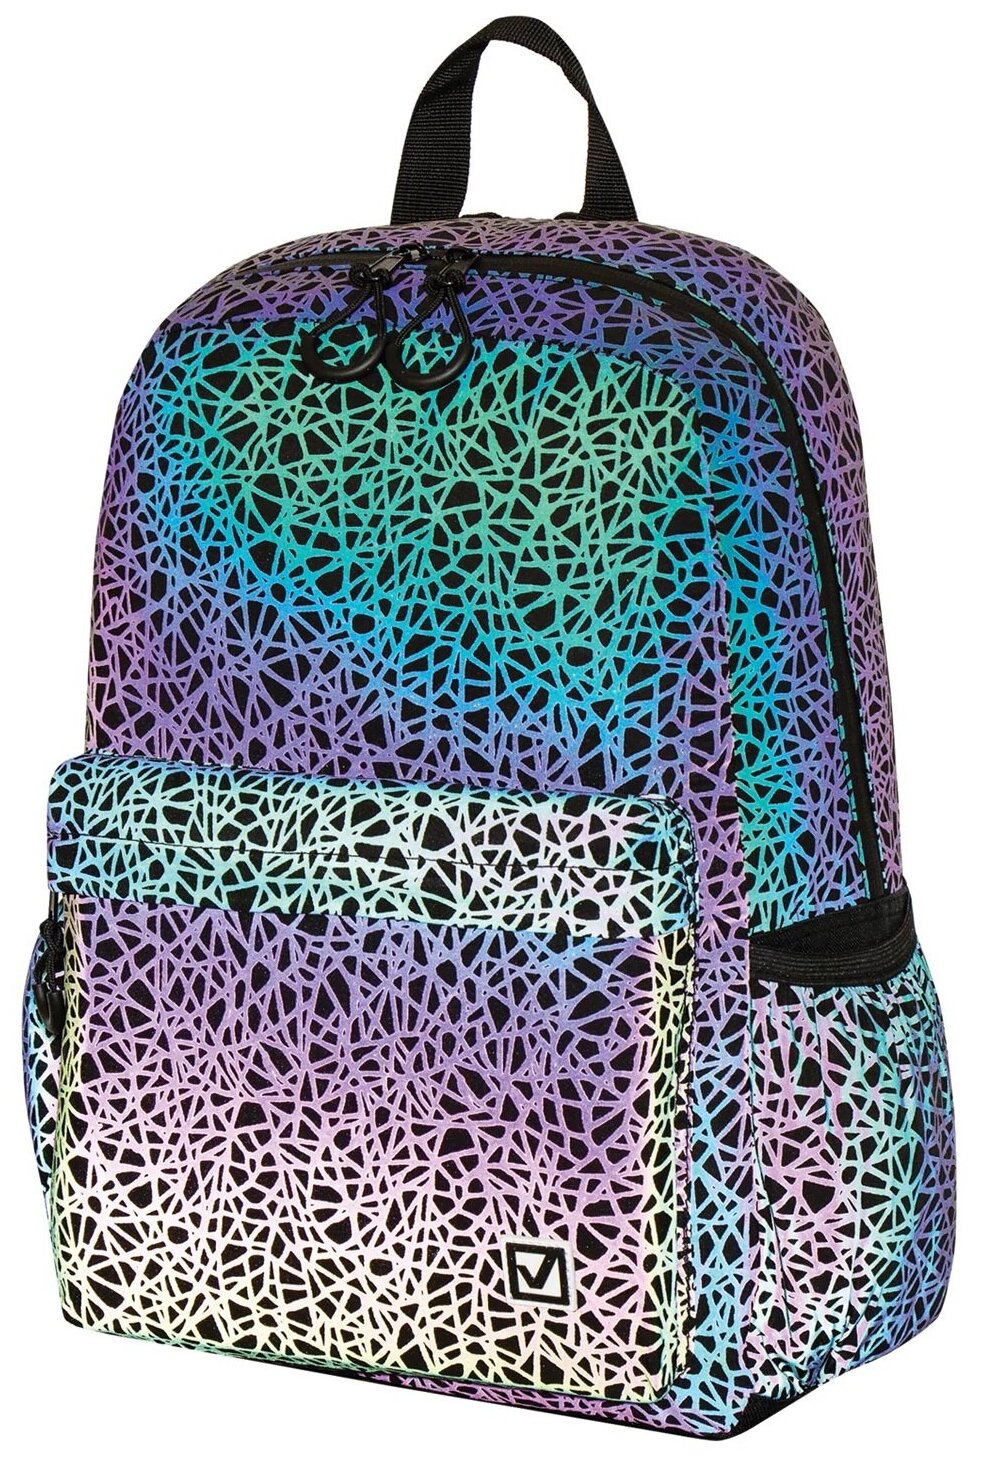 BRAUBERG Рюкзак BRIGHT универсальный, светящийся рисунок, Spiderweb, 42х31х15 см, 229941